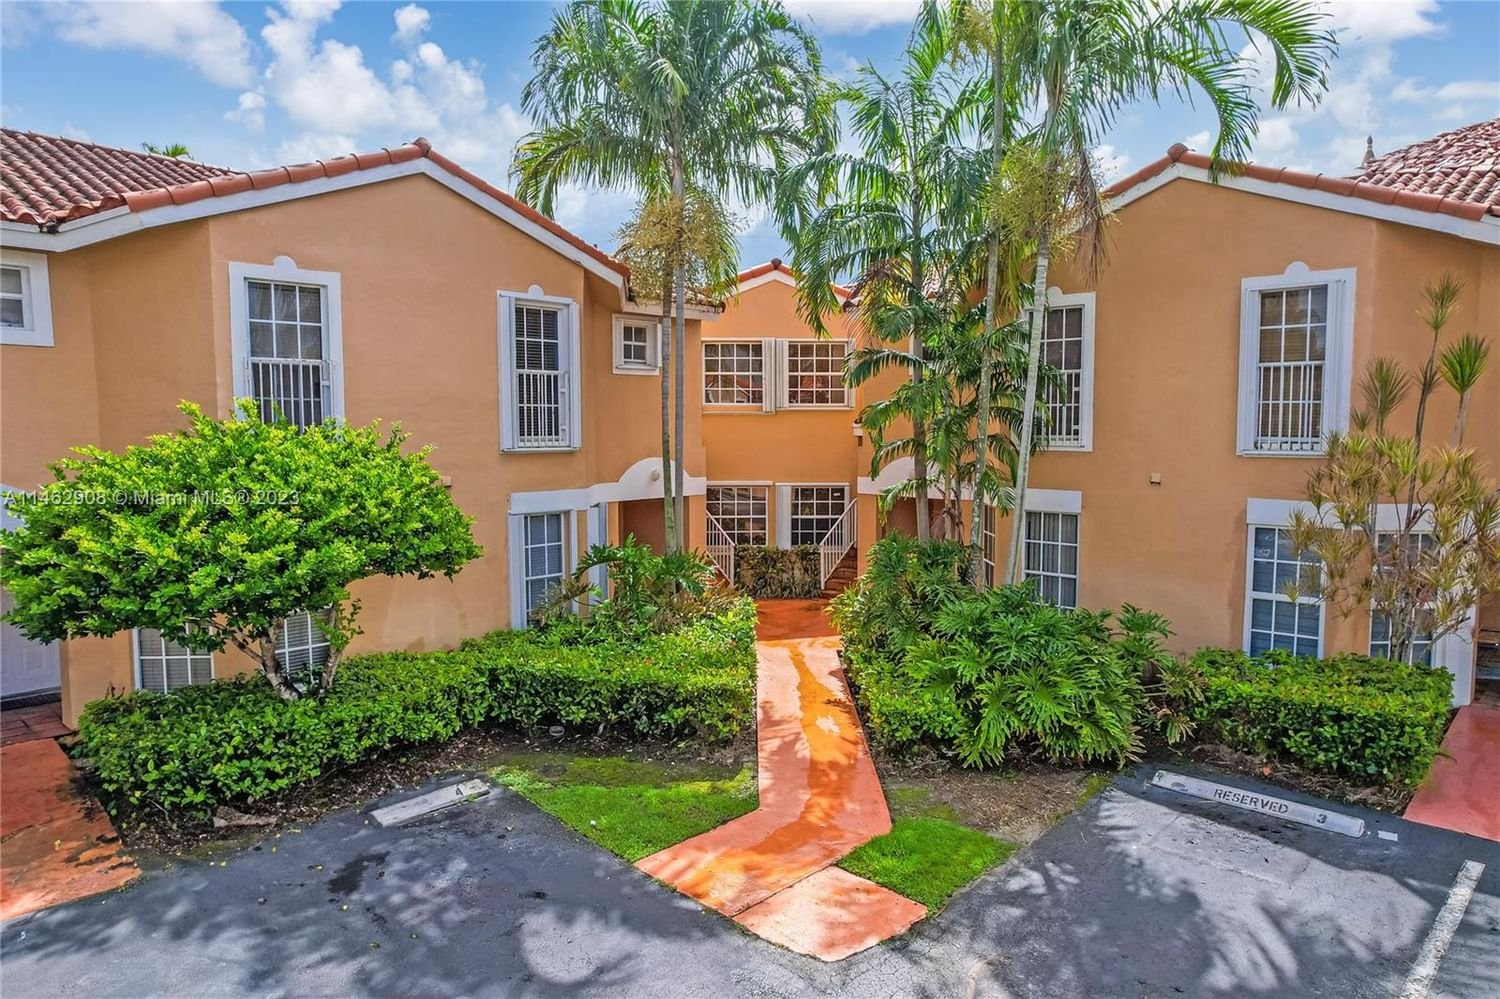 Real estate property located at 14305 57th Ln #7-5, Miami-Dade County, SIENNA VILLAS CONDO, Miami, FL